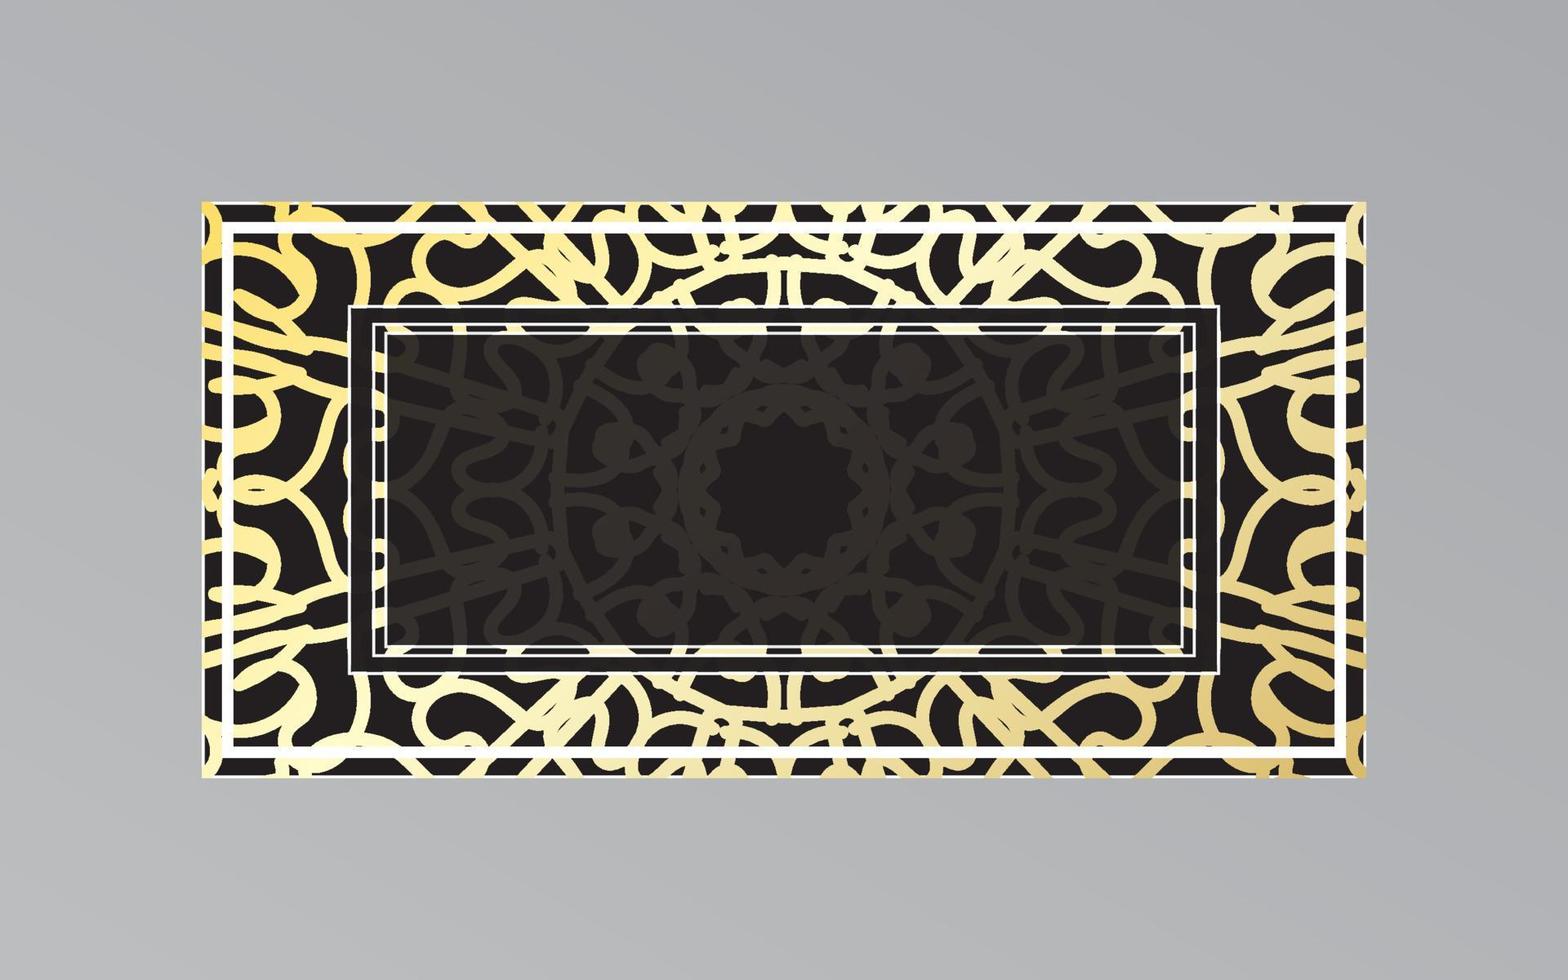 gouden frame op de muur in mandala-stijl. vector